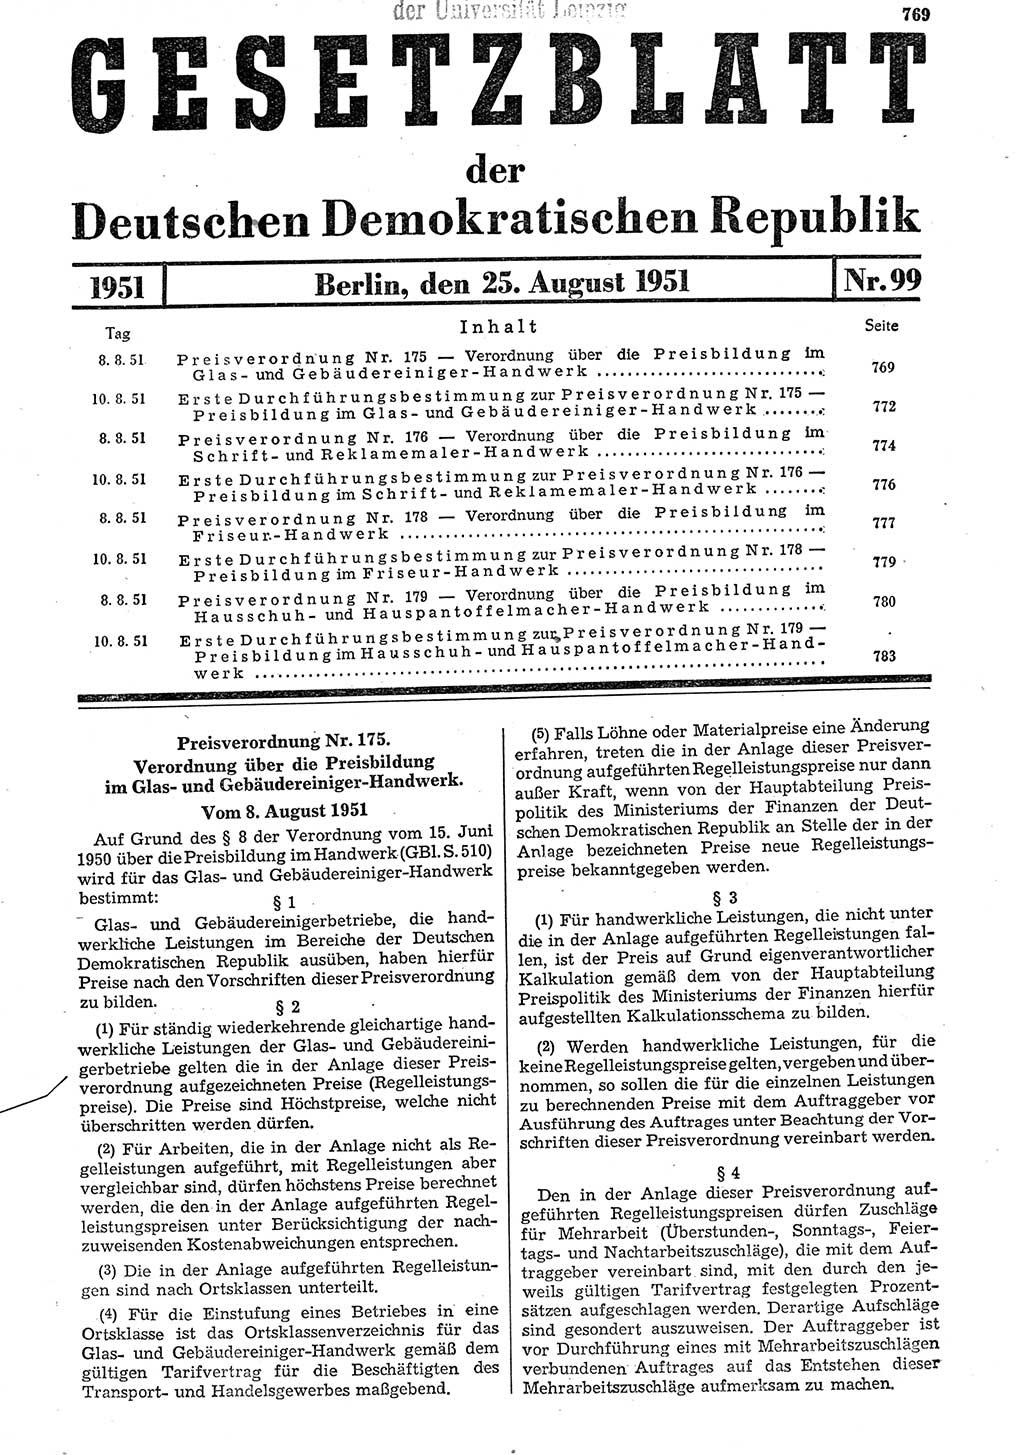 Gesetzblatt (GBl.) der Deutschen Demokratischen Republik (DDR) 1951, Seite 769 (GBl. DDR 1951, S. 769)